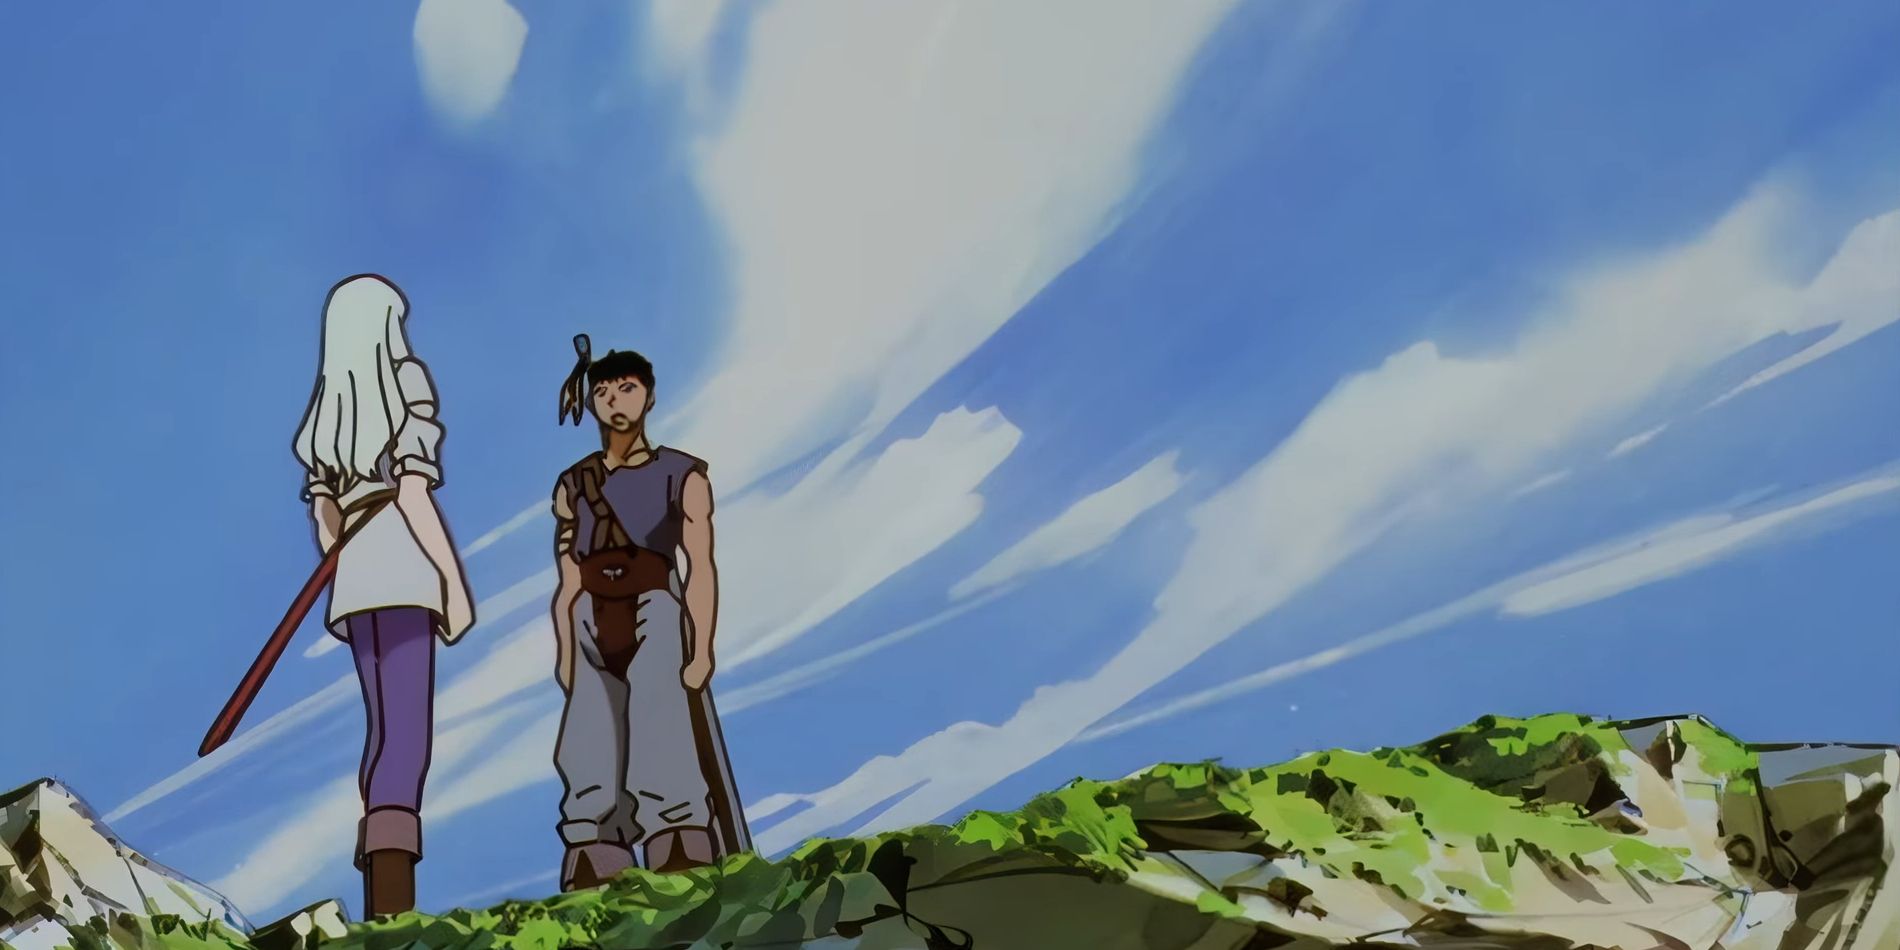 Captura de tela do anime Berserk 1997 mostra um jovem Guts e Griffith conversando em uma encosta com um céu azul brilhante atrás deles.  Eles apresentam detalhes mínimos, como o rosto de Guts desenhado com apenas algumas linhas para criar uma expressão.